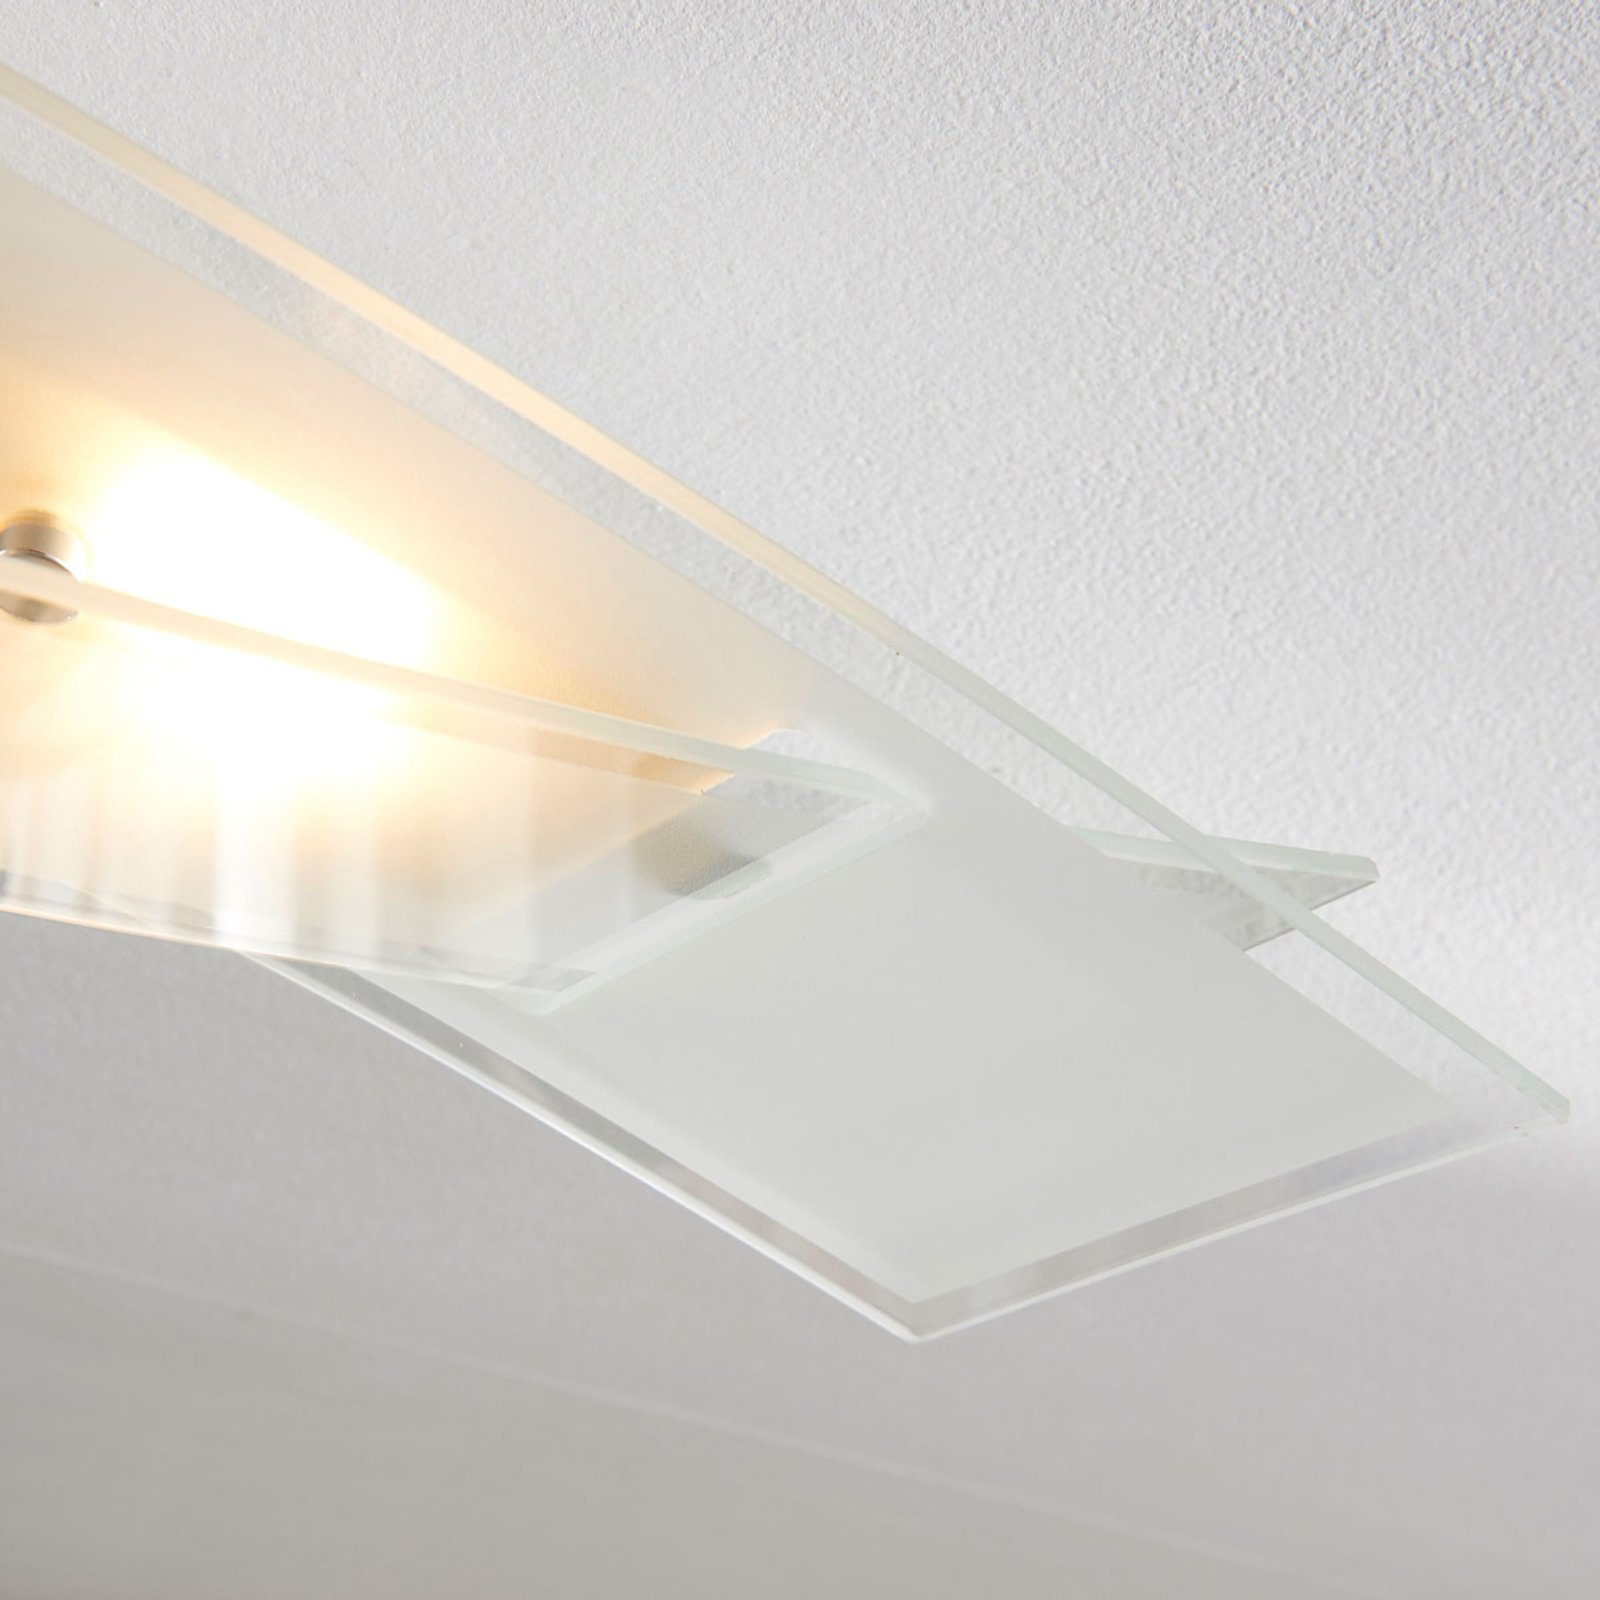 LED-plafondlamp Fiete van glas